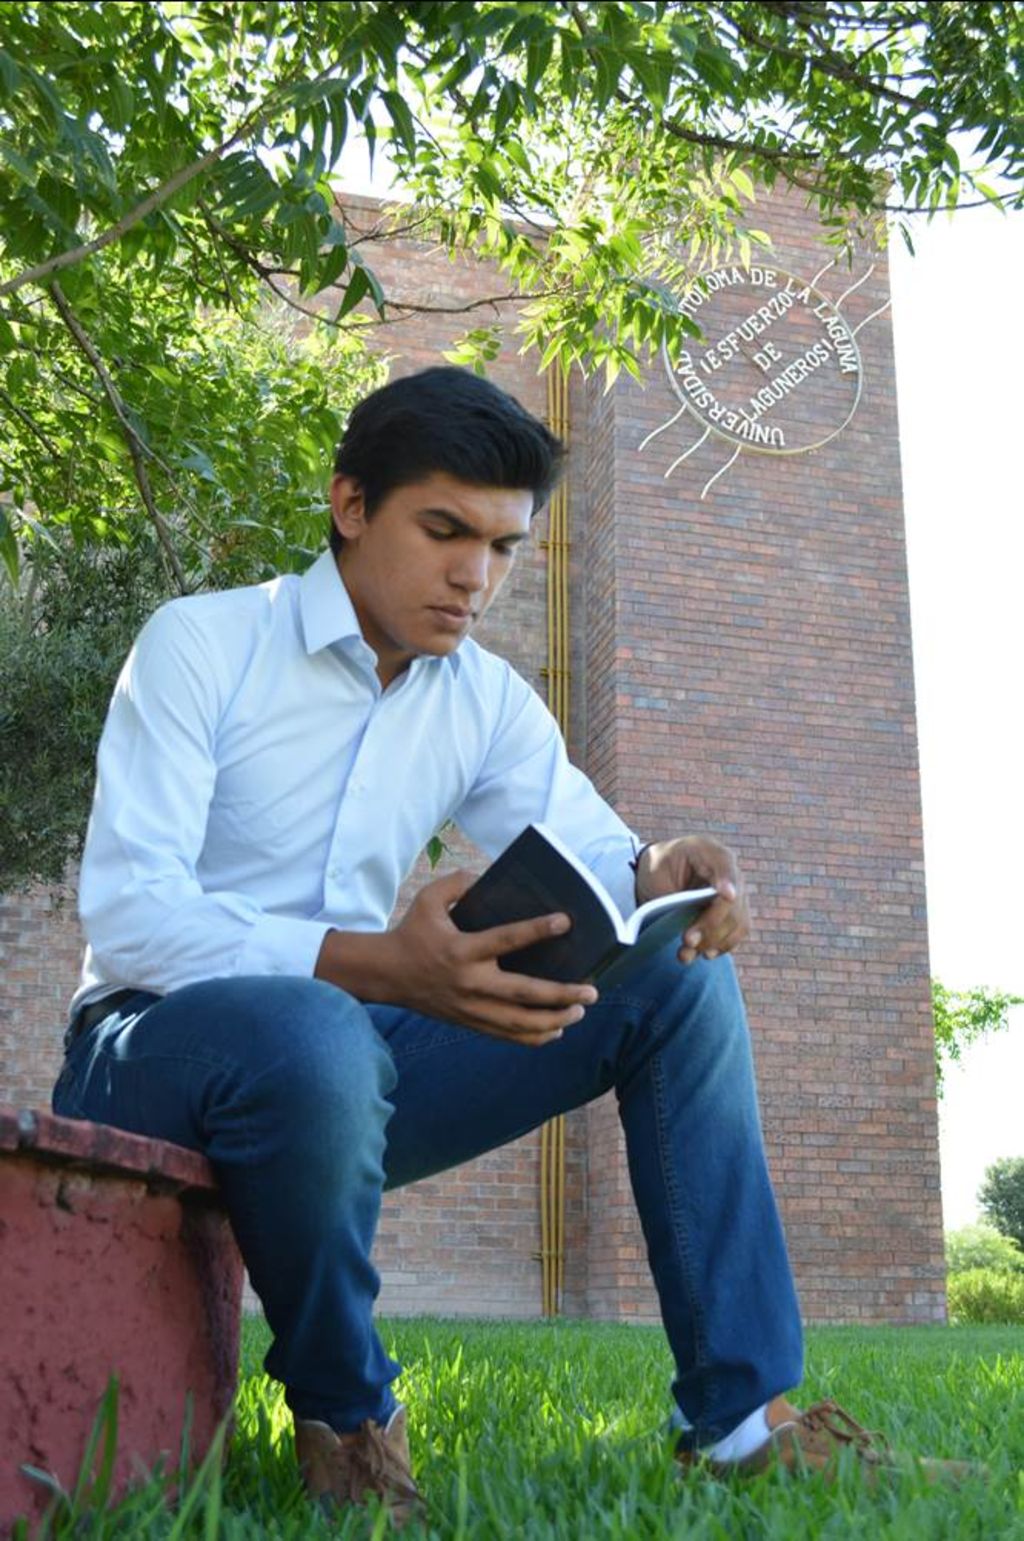 La edición. El libro del estudiante Alex Martín Valles Mendoza, fue publicado por la Universidad Autónoma de La Laguna.